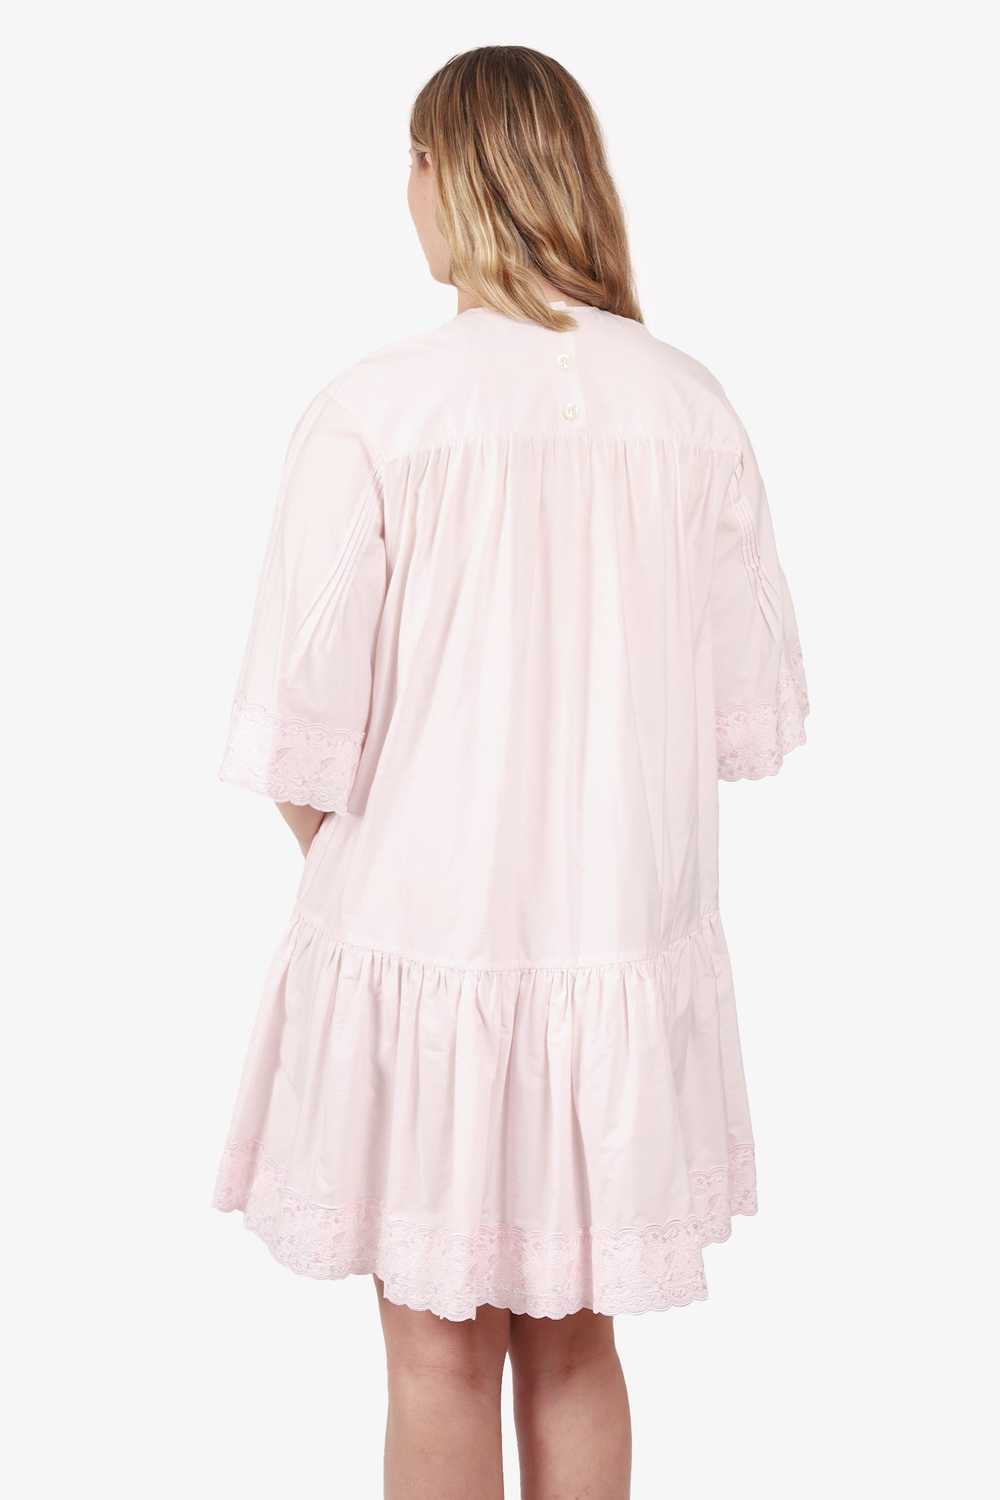 Simone Rocha Pink Lace Drop Waist Dress Size 6 - image 4